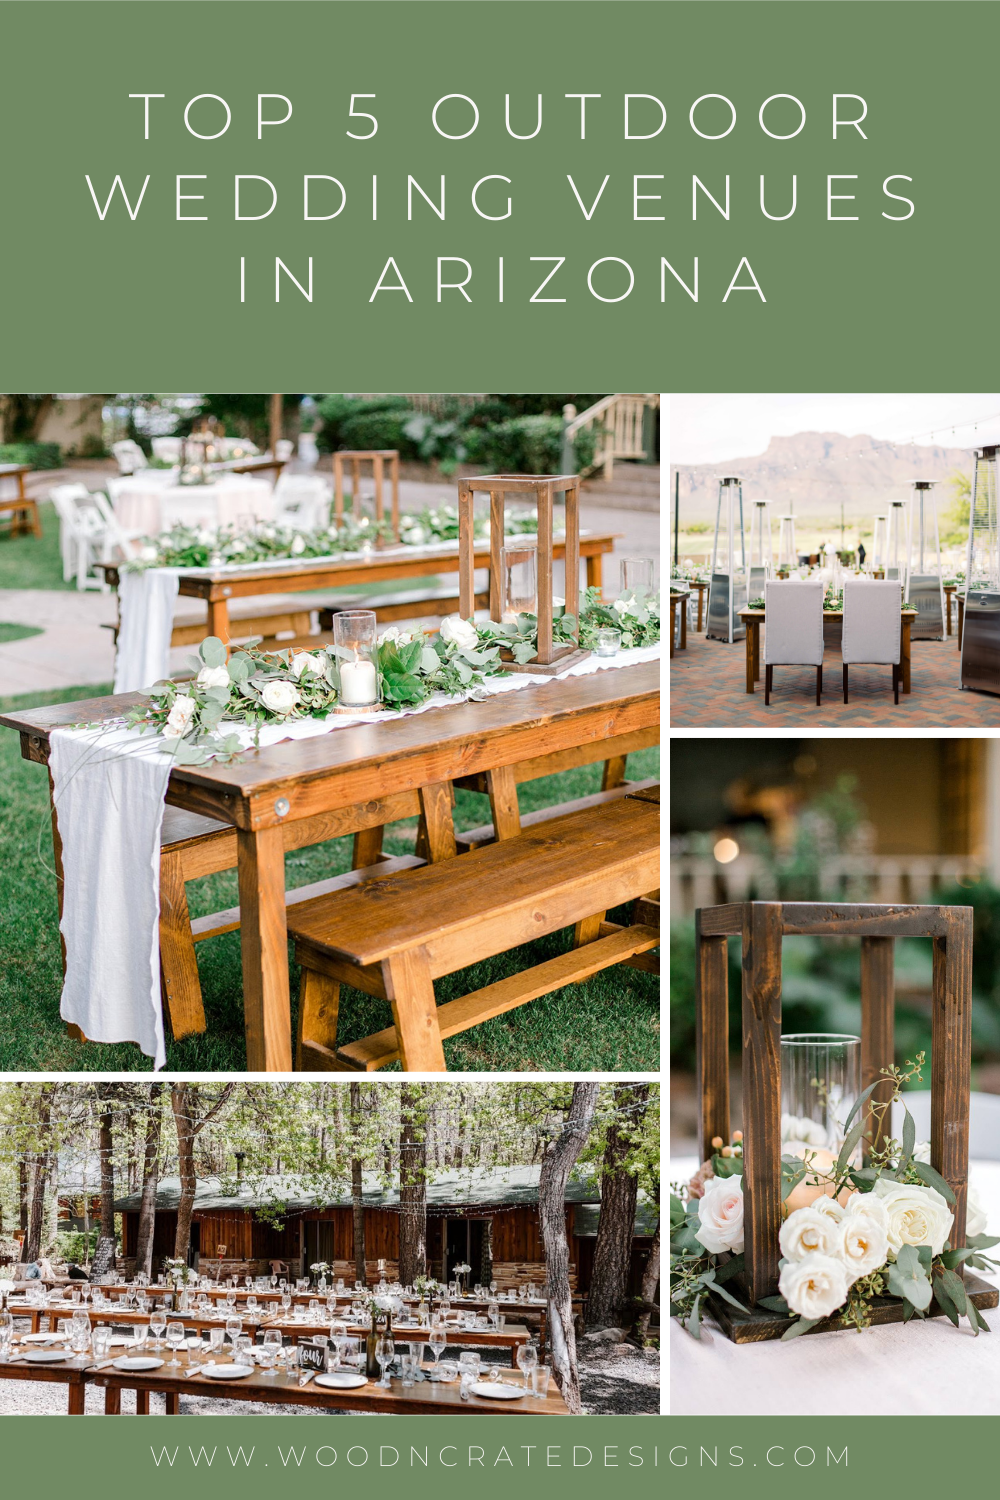 Rustic outdoor wedding venues in Arizona